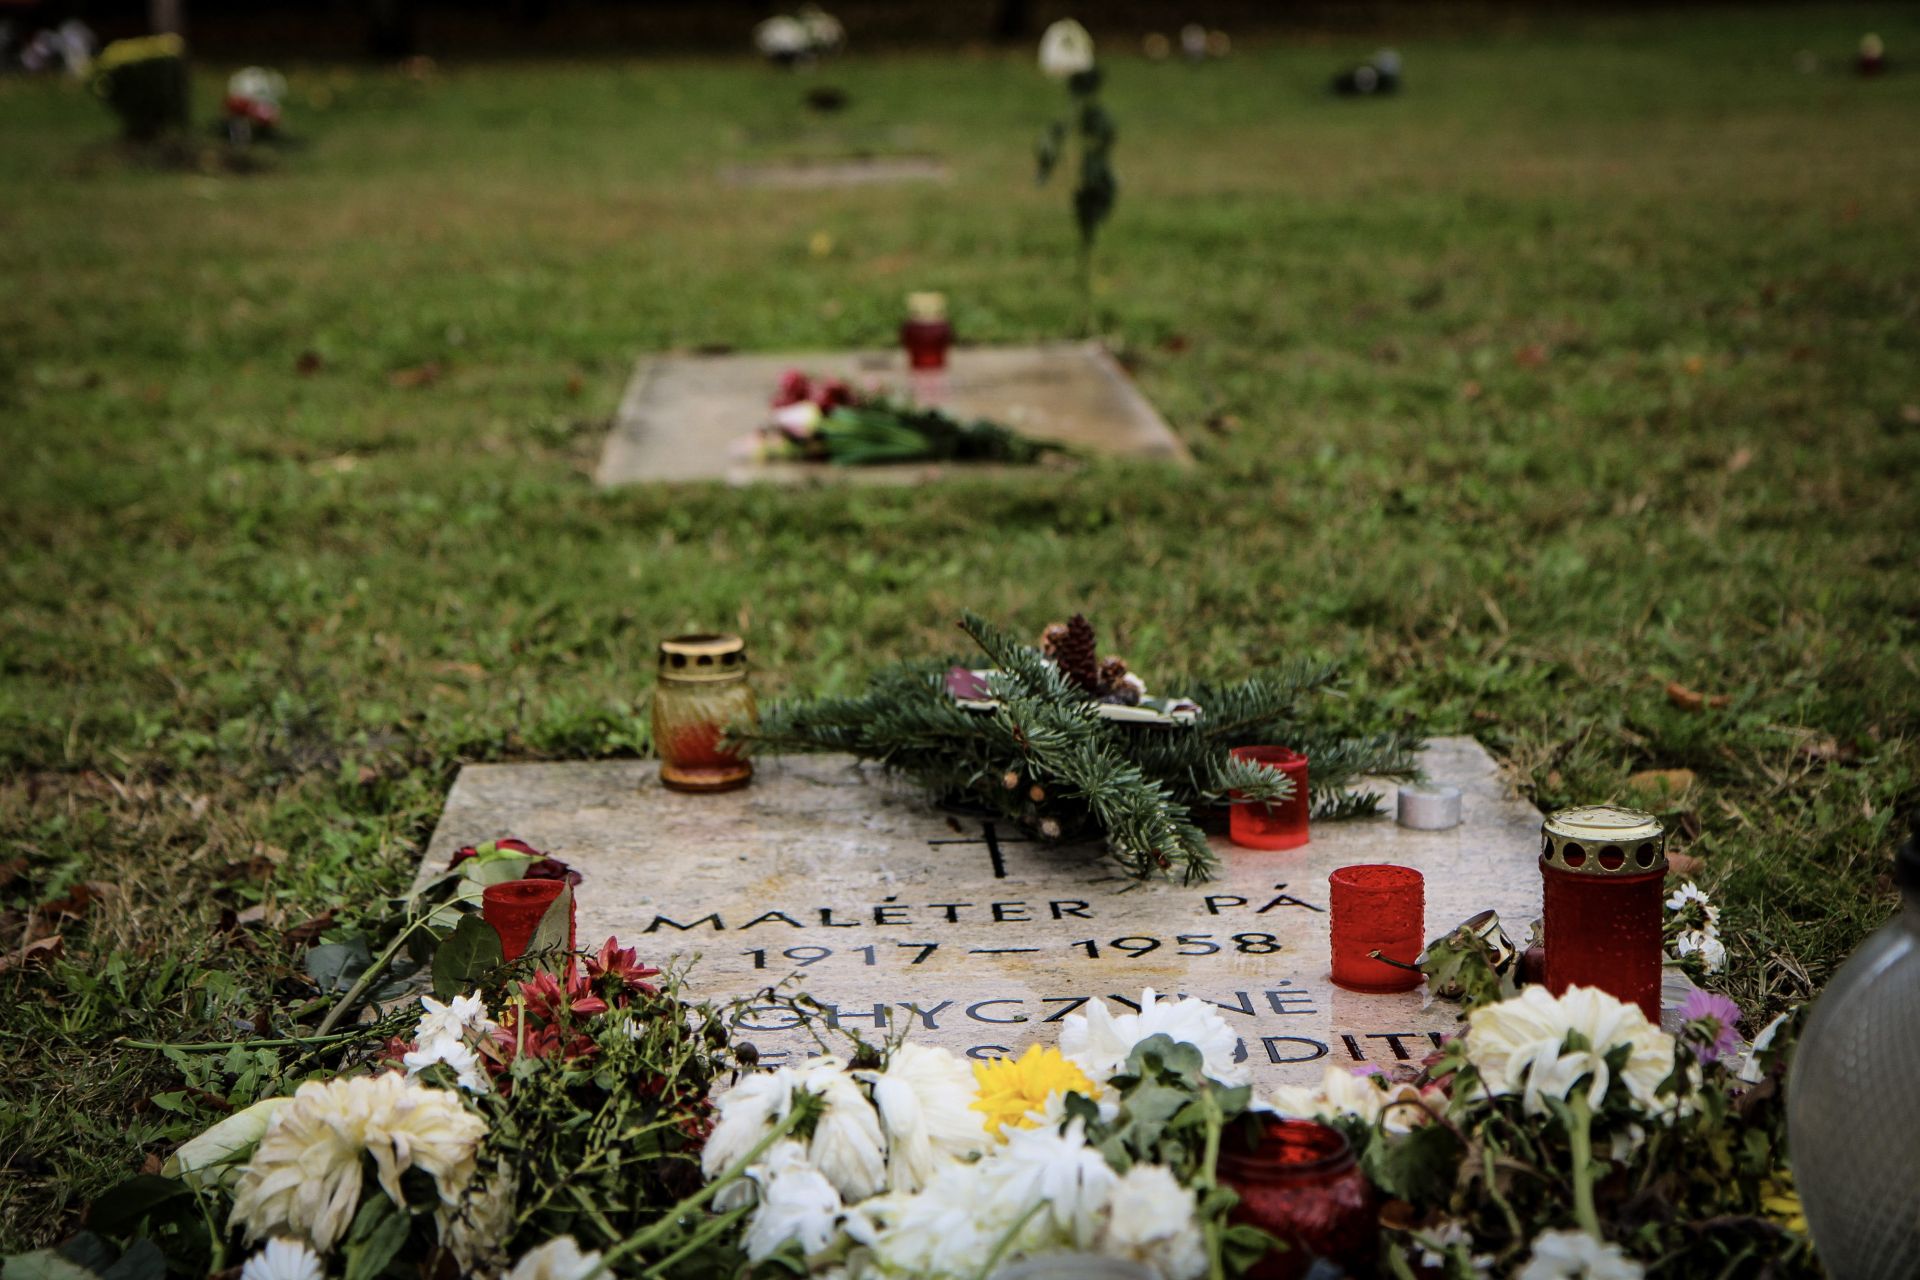 Több mint harminc síremlék újult meg a nemzeti gyásznapra az Új köztemető 300-as percellájában